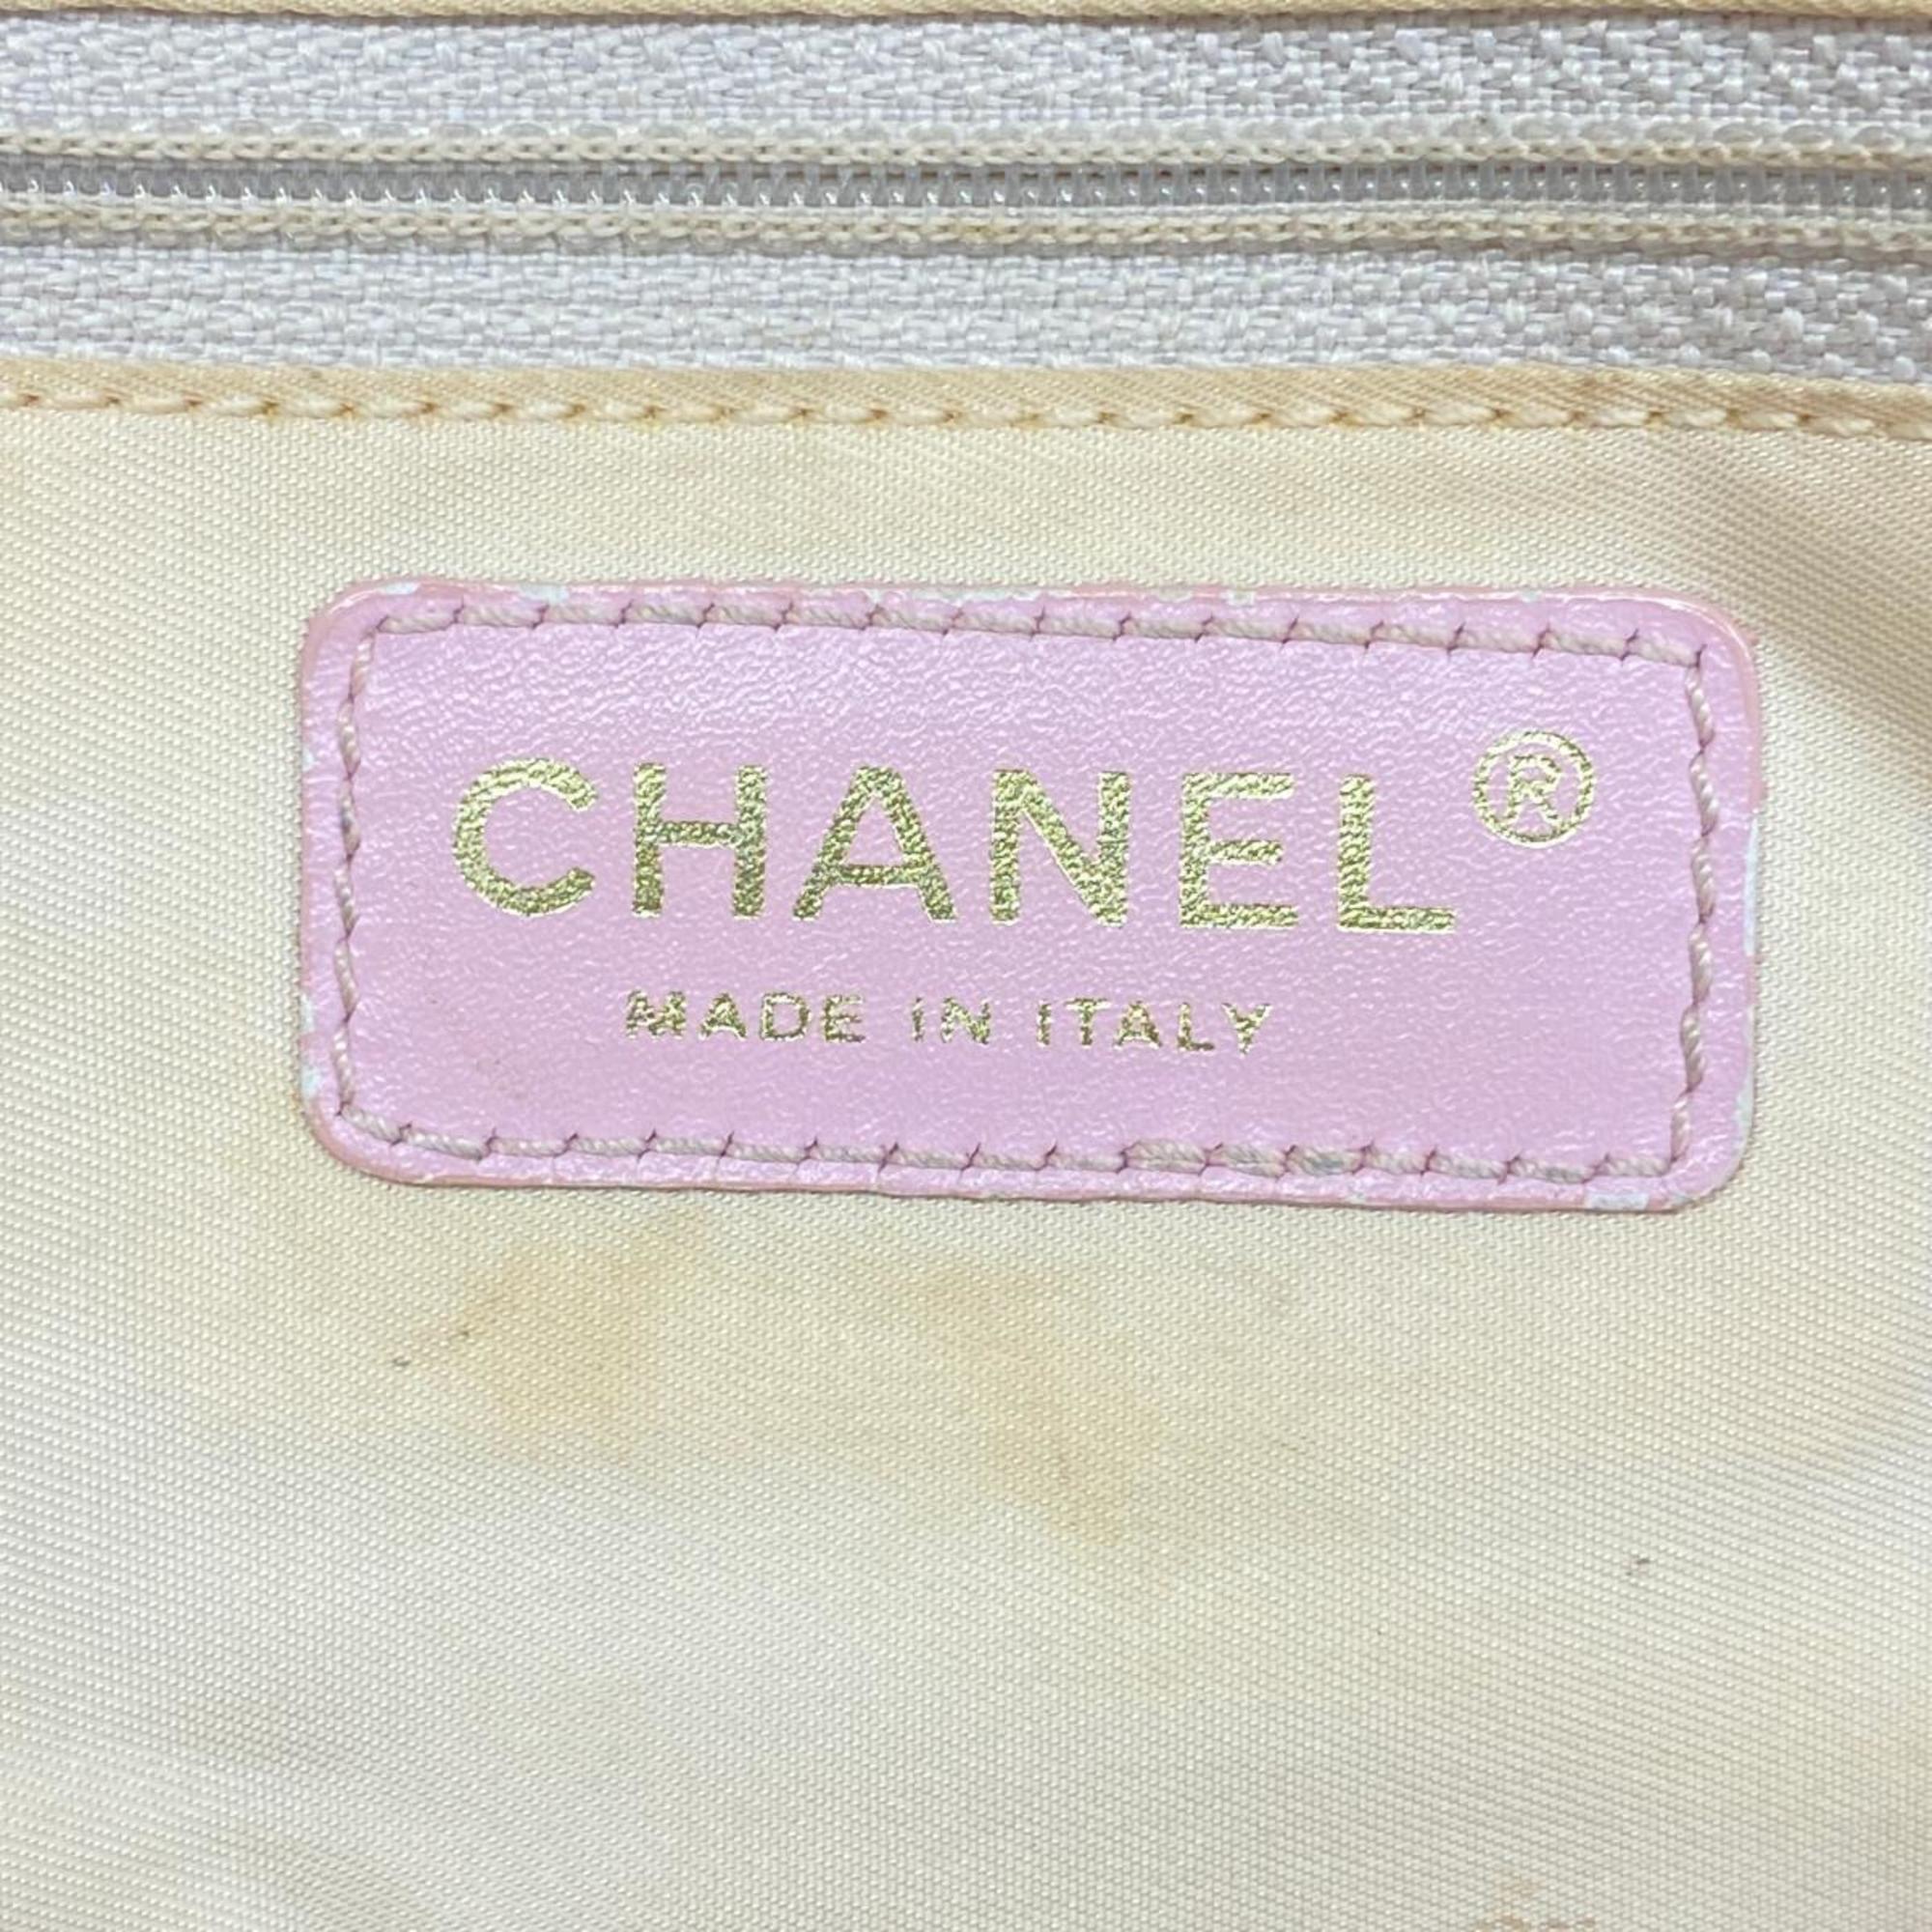 シャネル(Chanel) シャネル トートバッグ ニュートラベル ナイロン ピンク  レディース